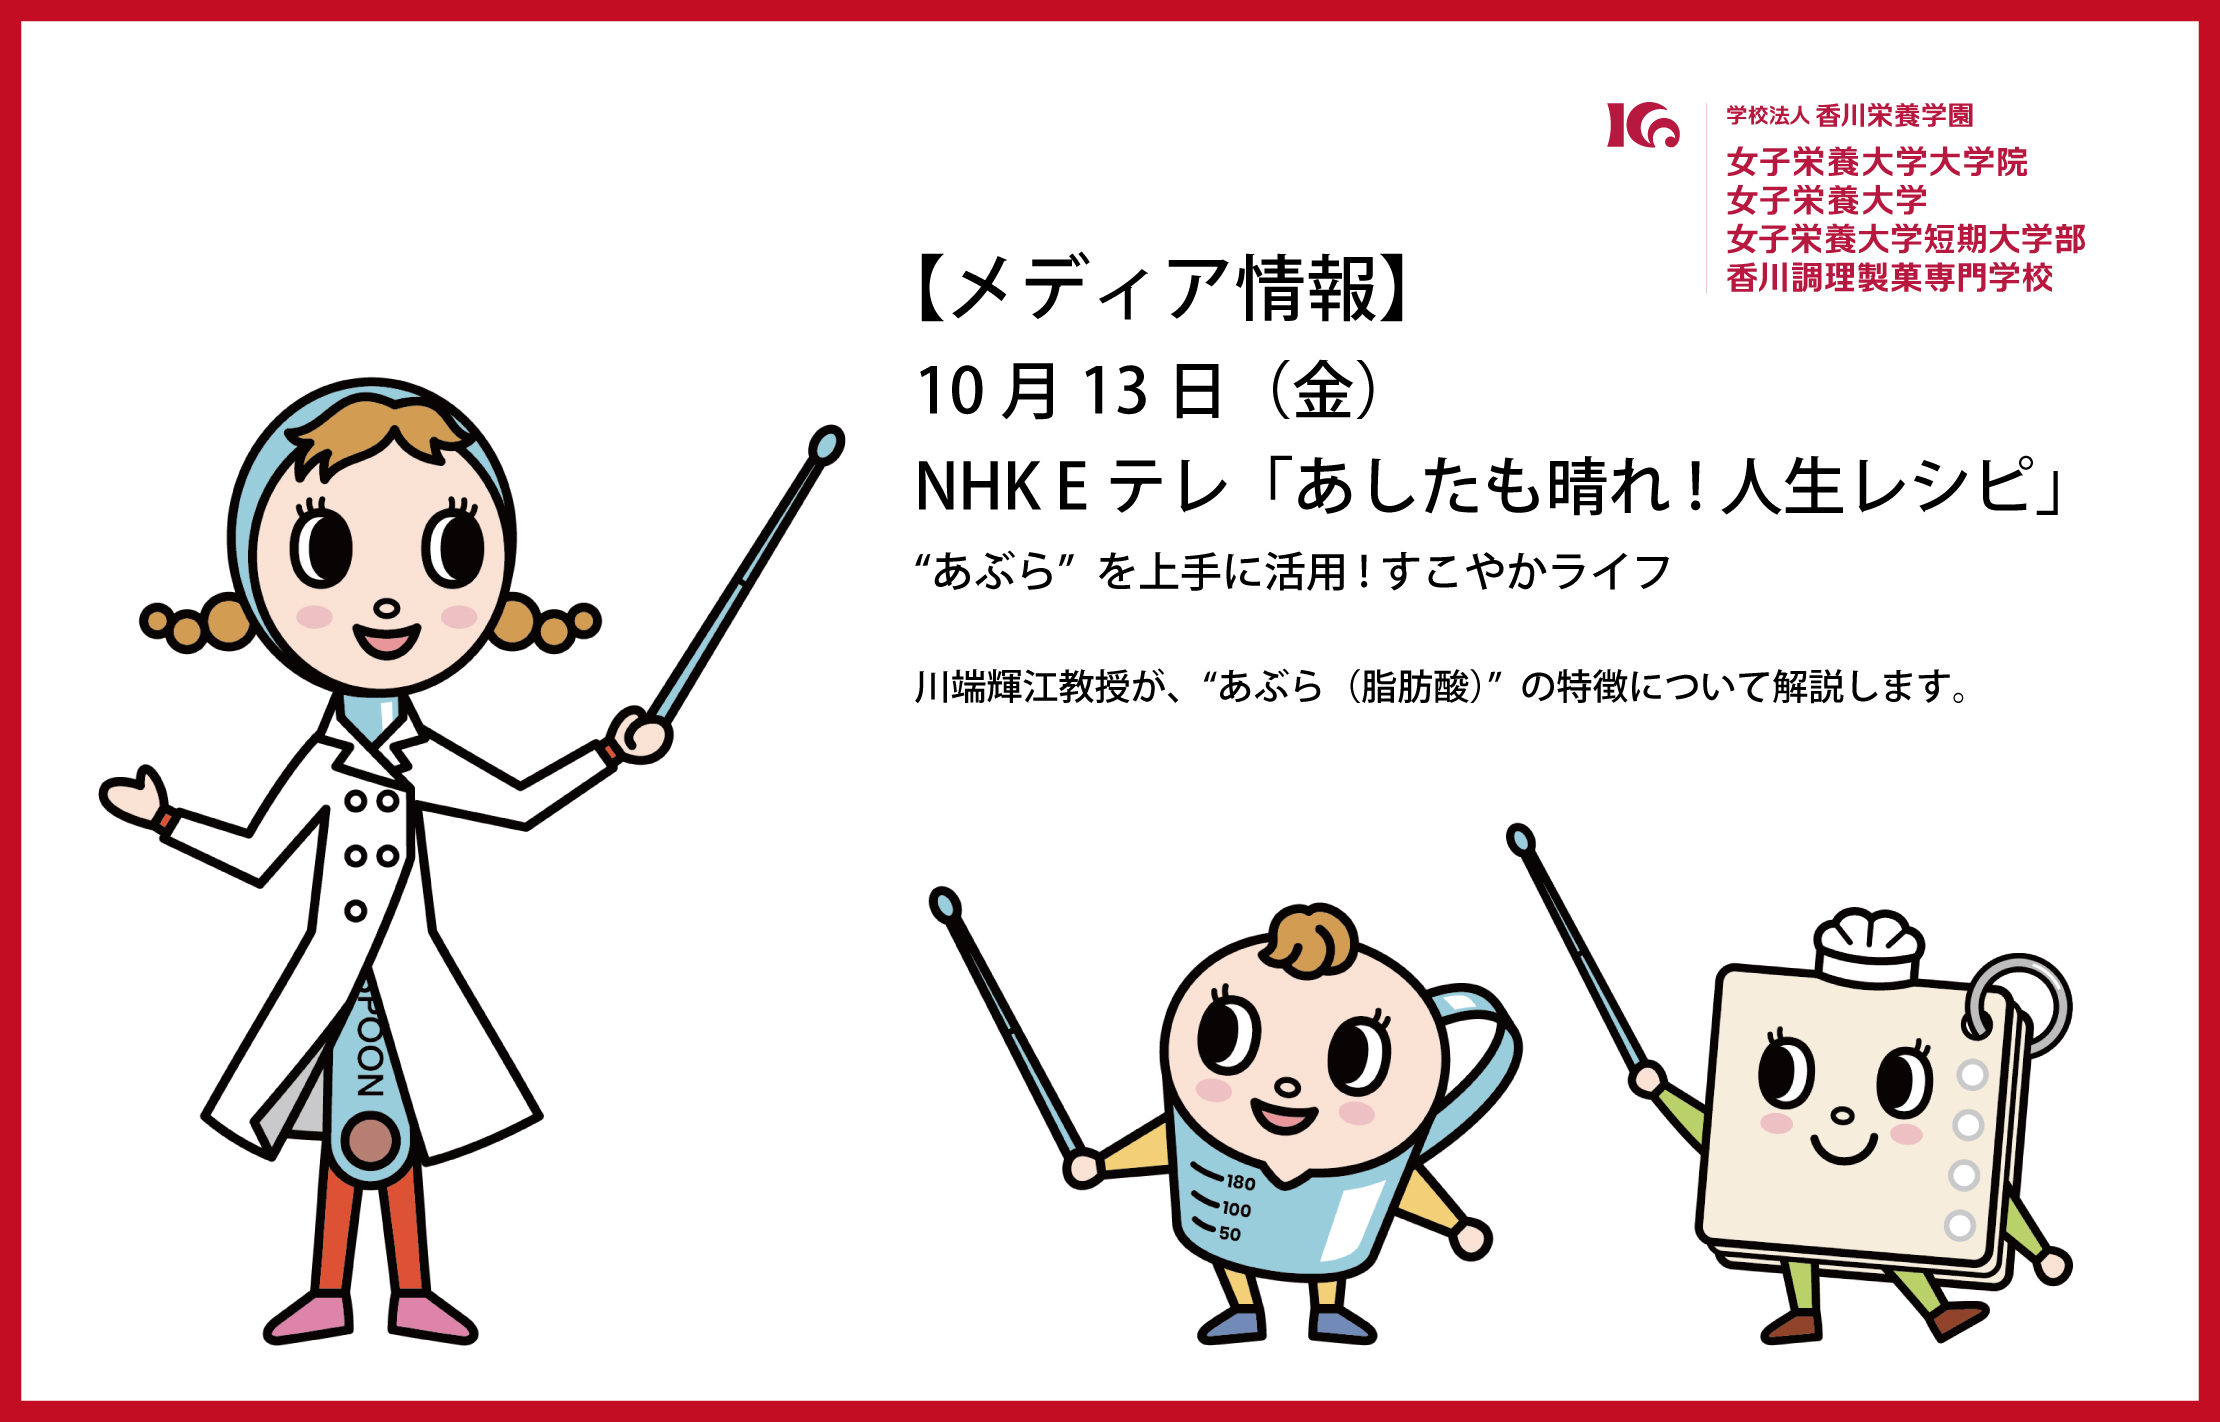 10月13日（金）、NHK Eテレ「あしたも晴れ!人生レシピ」に、川端輝江先生が出演します